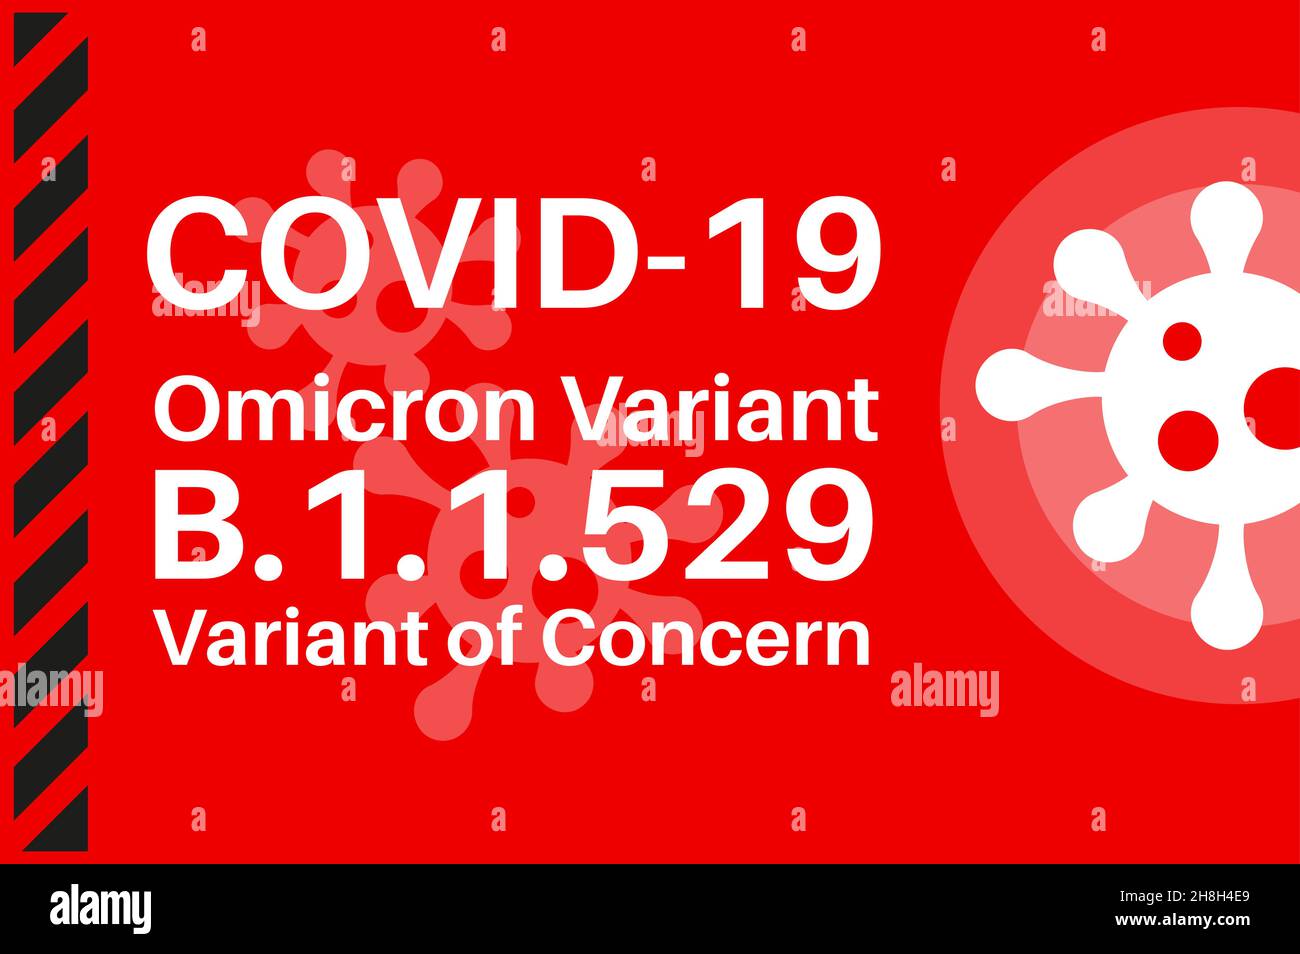 Covid-19 Omicron (B.1.1.529): SARS-COV-2 variante di preoccupazione - Illustrazione con il logo del virus su sfondo rosso. Illustrazione Vettoriale